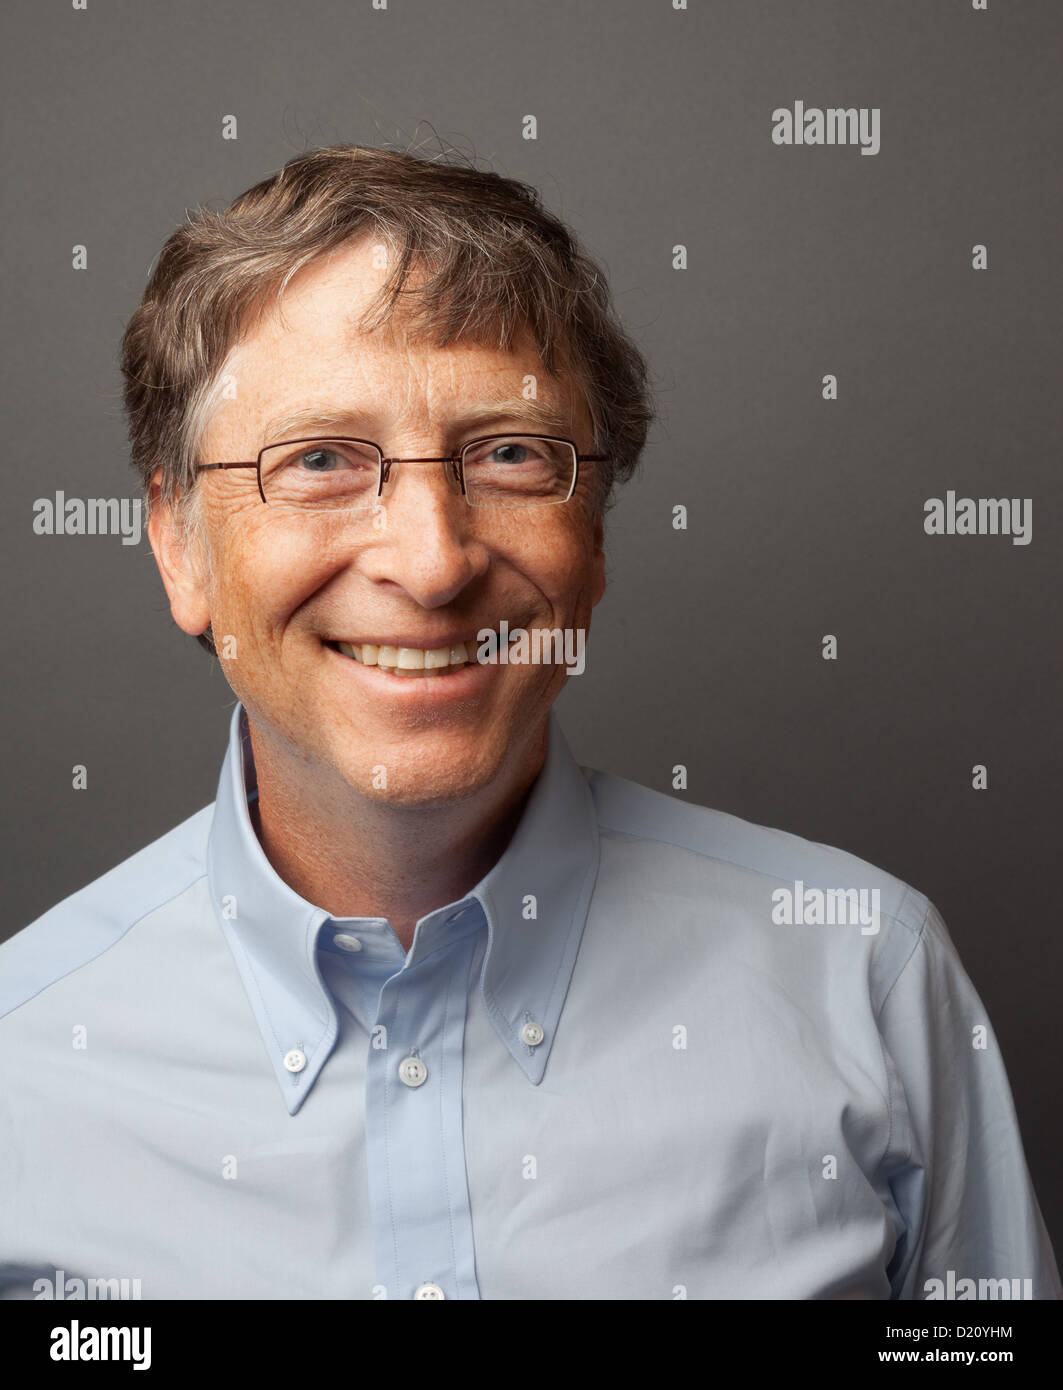 Bill Gates Studio Headshot Portrait, 2010 Stock Photo